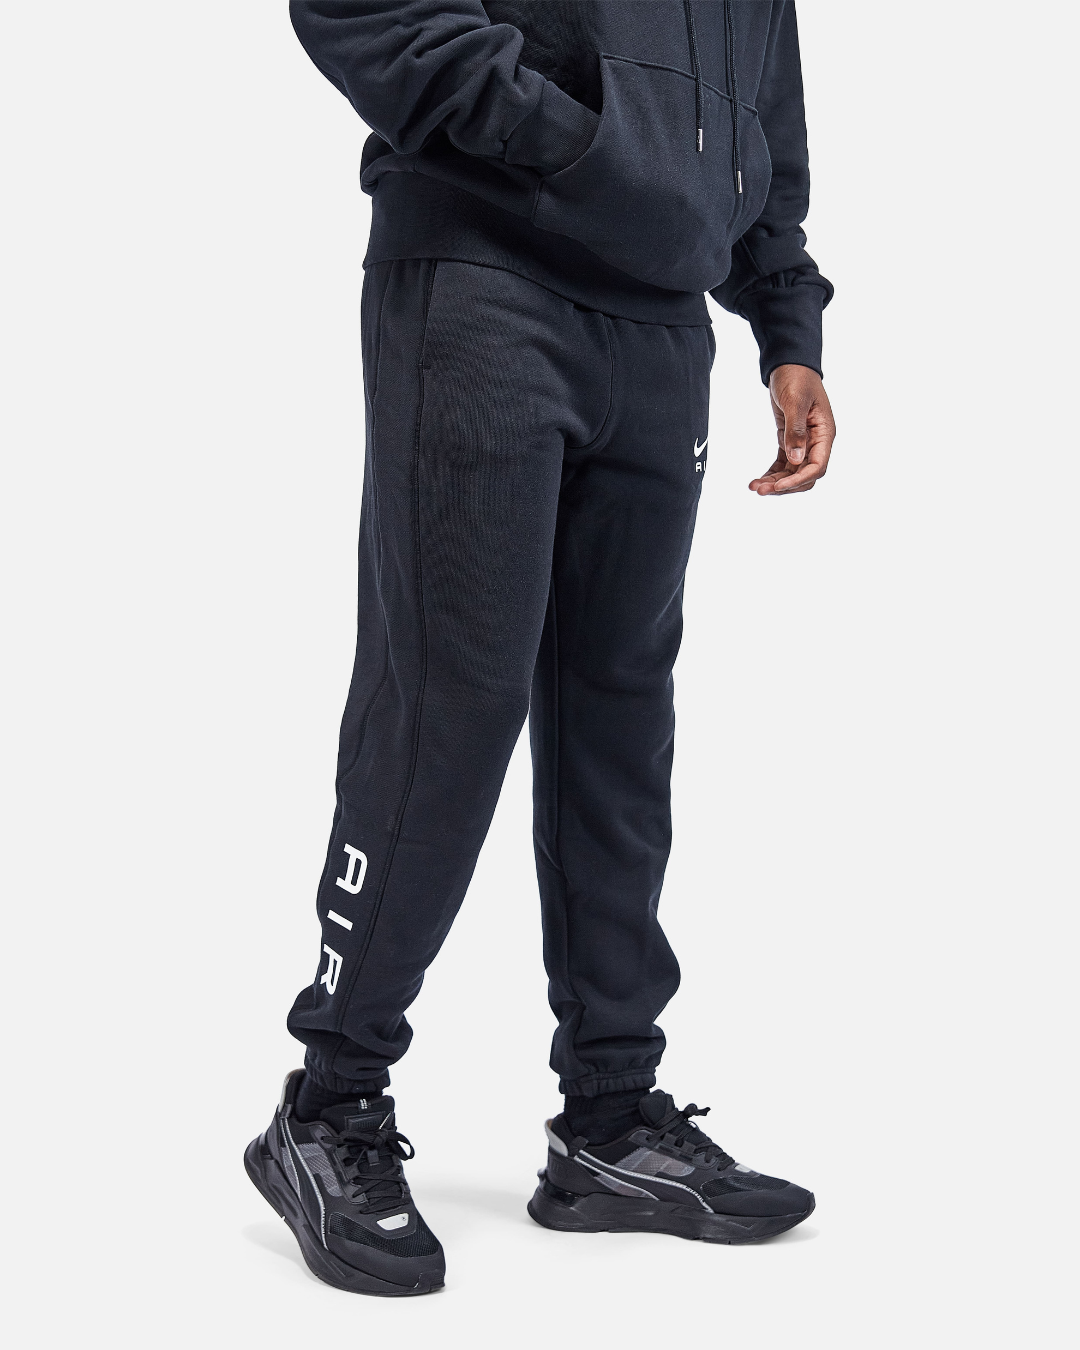 Nike Sportswear Air Pants - Black/White